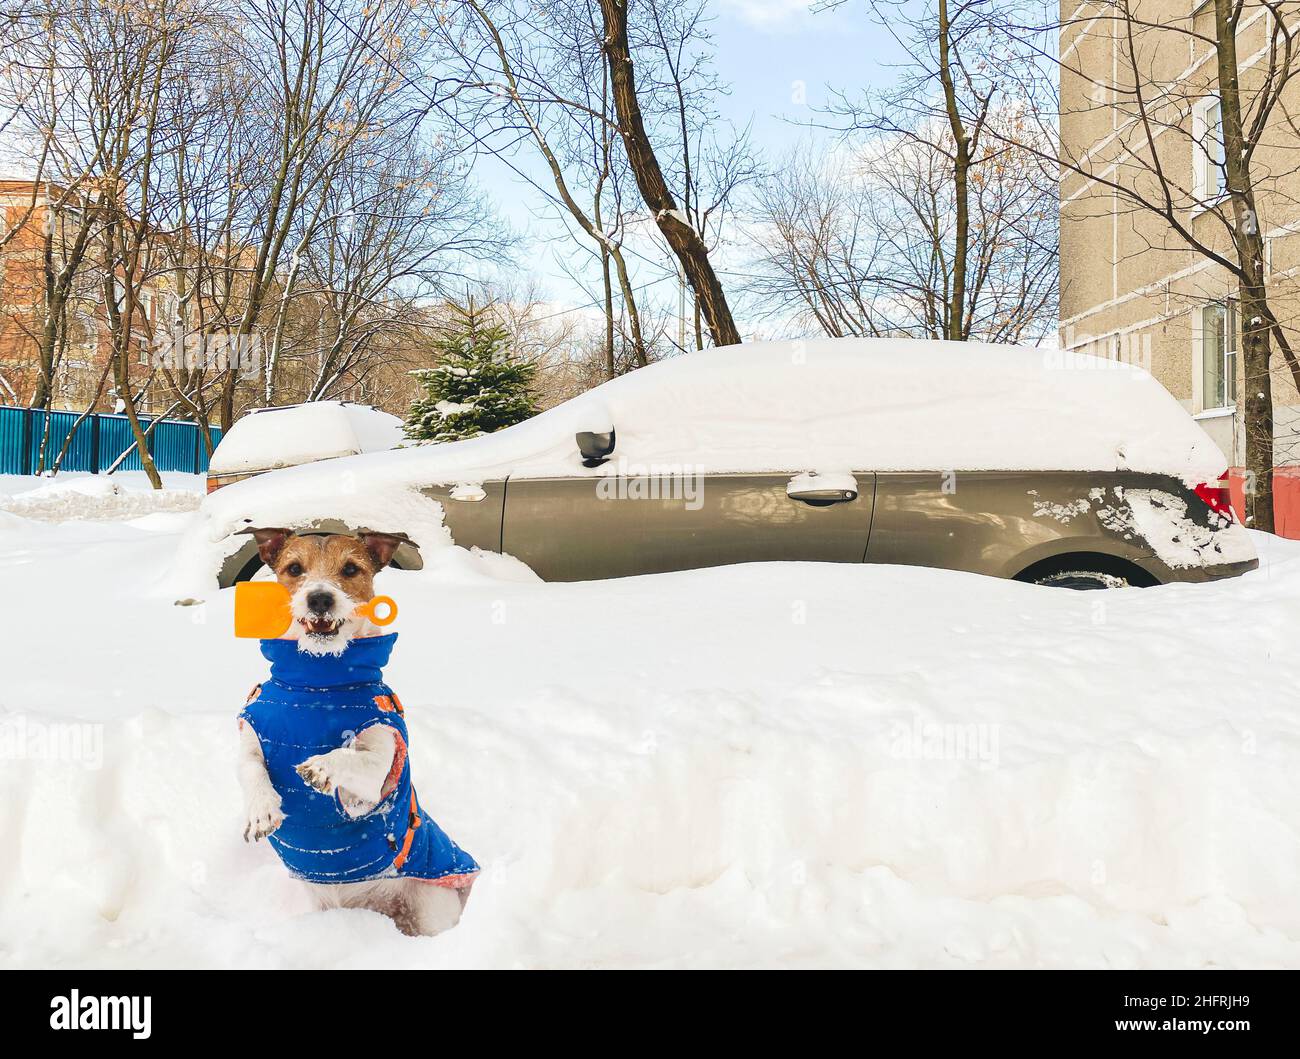 Hund als kleiner Retter mit kleiner Schaufel bereit, Auto aus Schneeverwehung nach riesigen Schneefall auszugraben Stockfoto